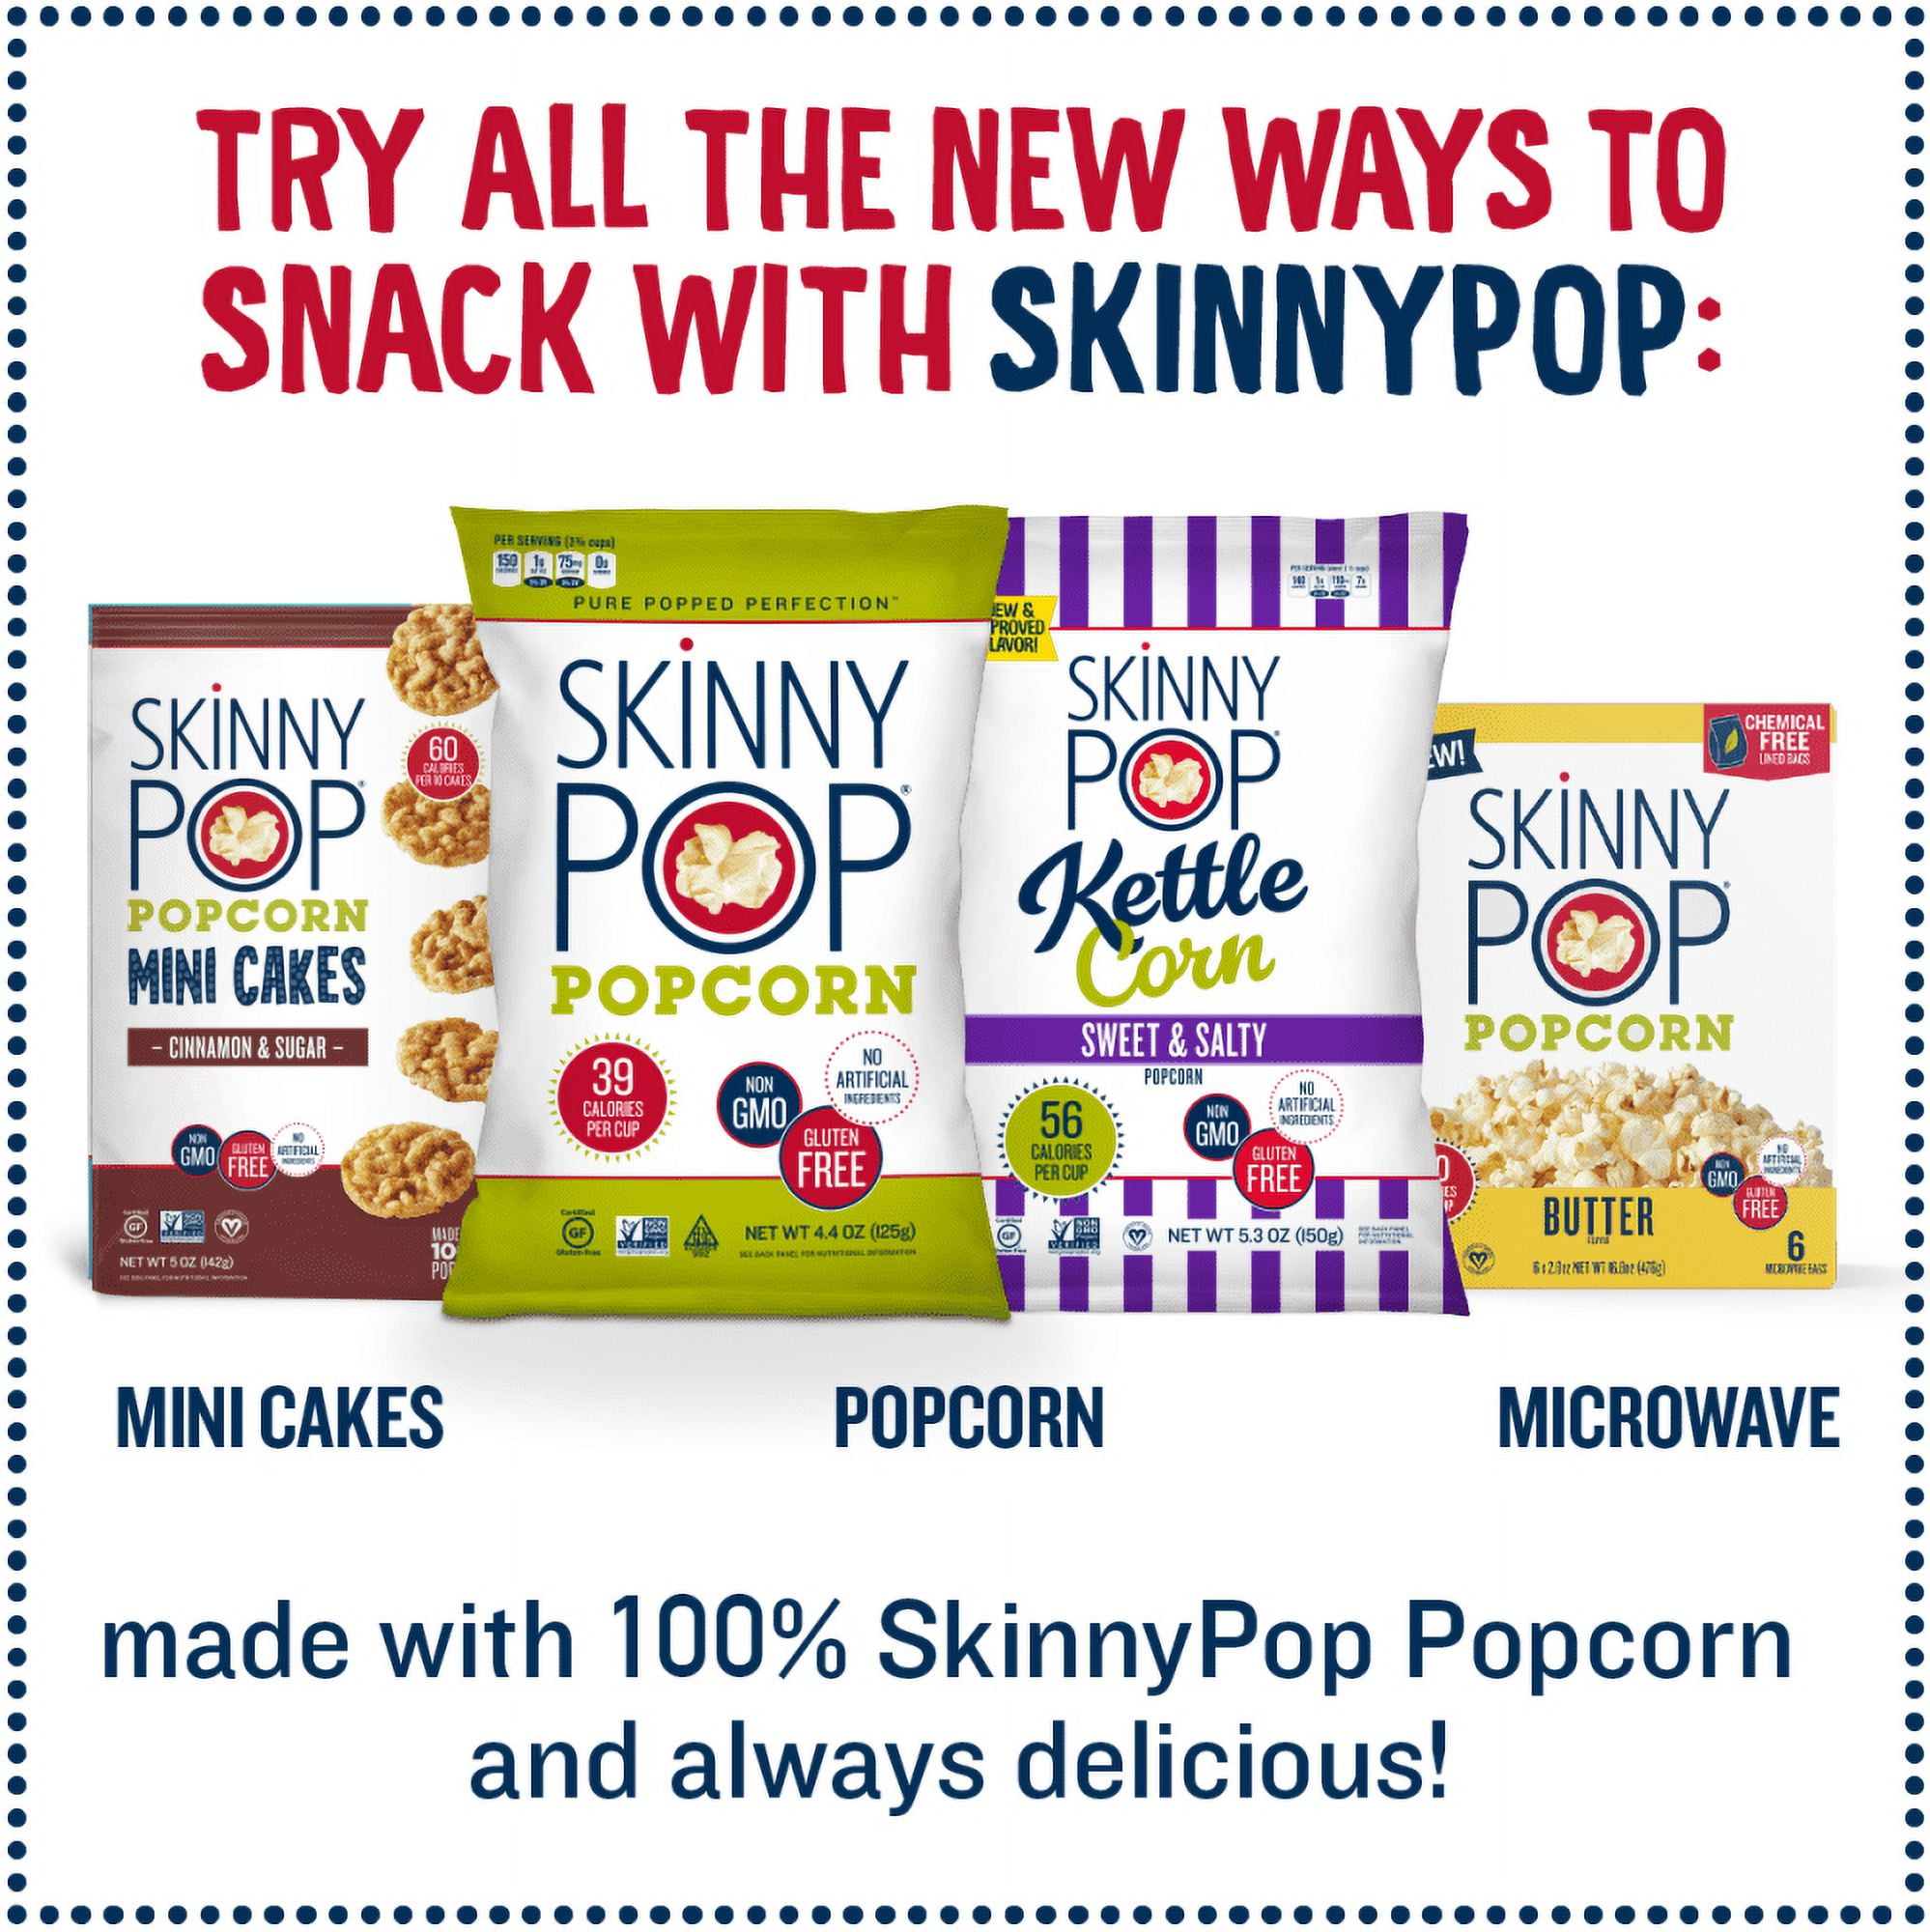 Skinnypop Popcorn Skinny Pop - White Cheddar, 6/.65 OZ - Jay C